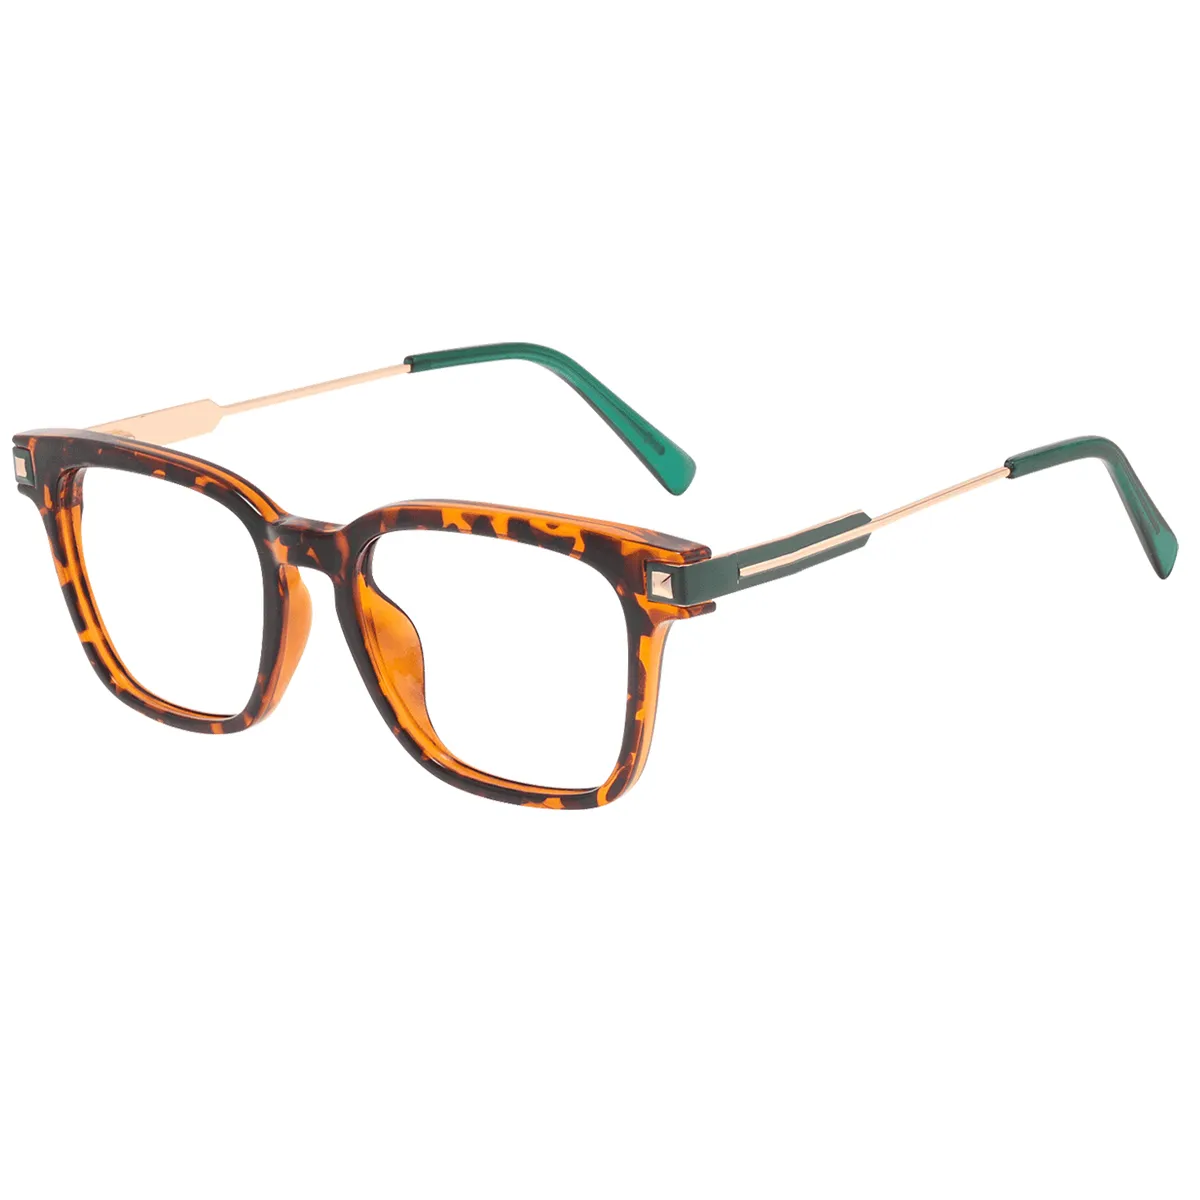 Keith - Square Tortoiseshell Glasses for Men